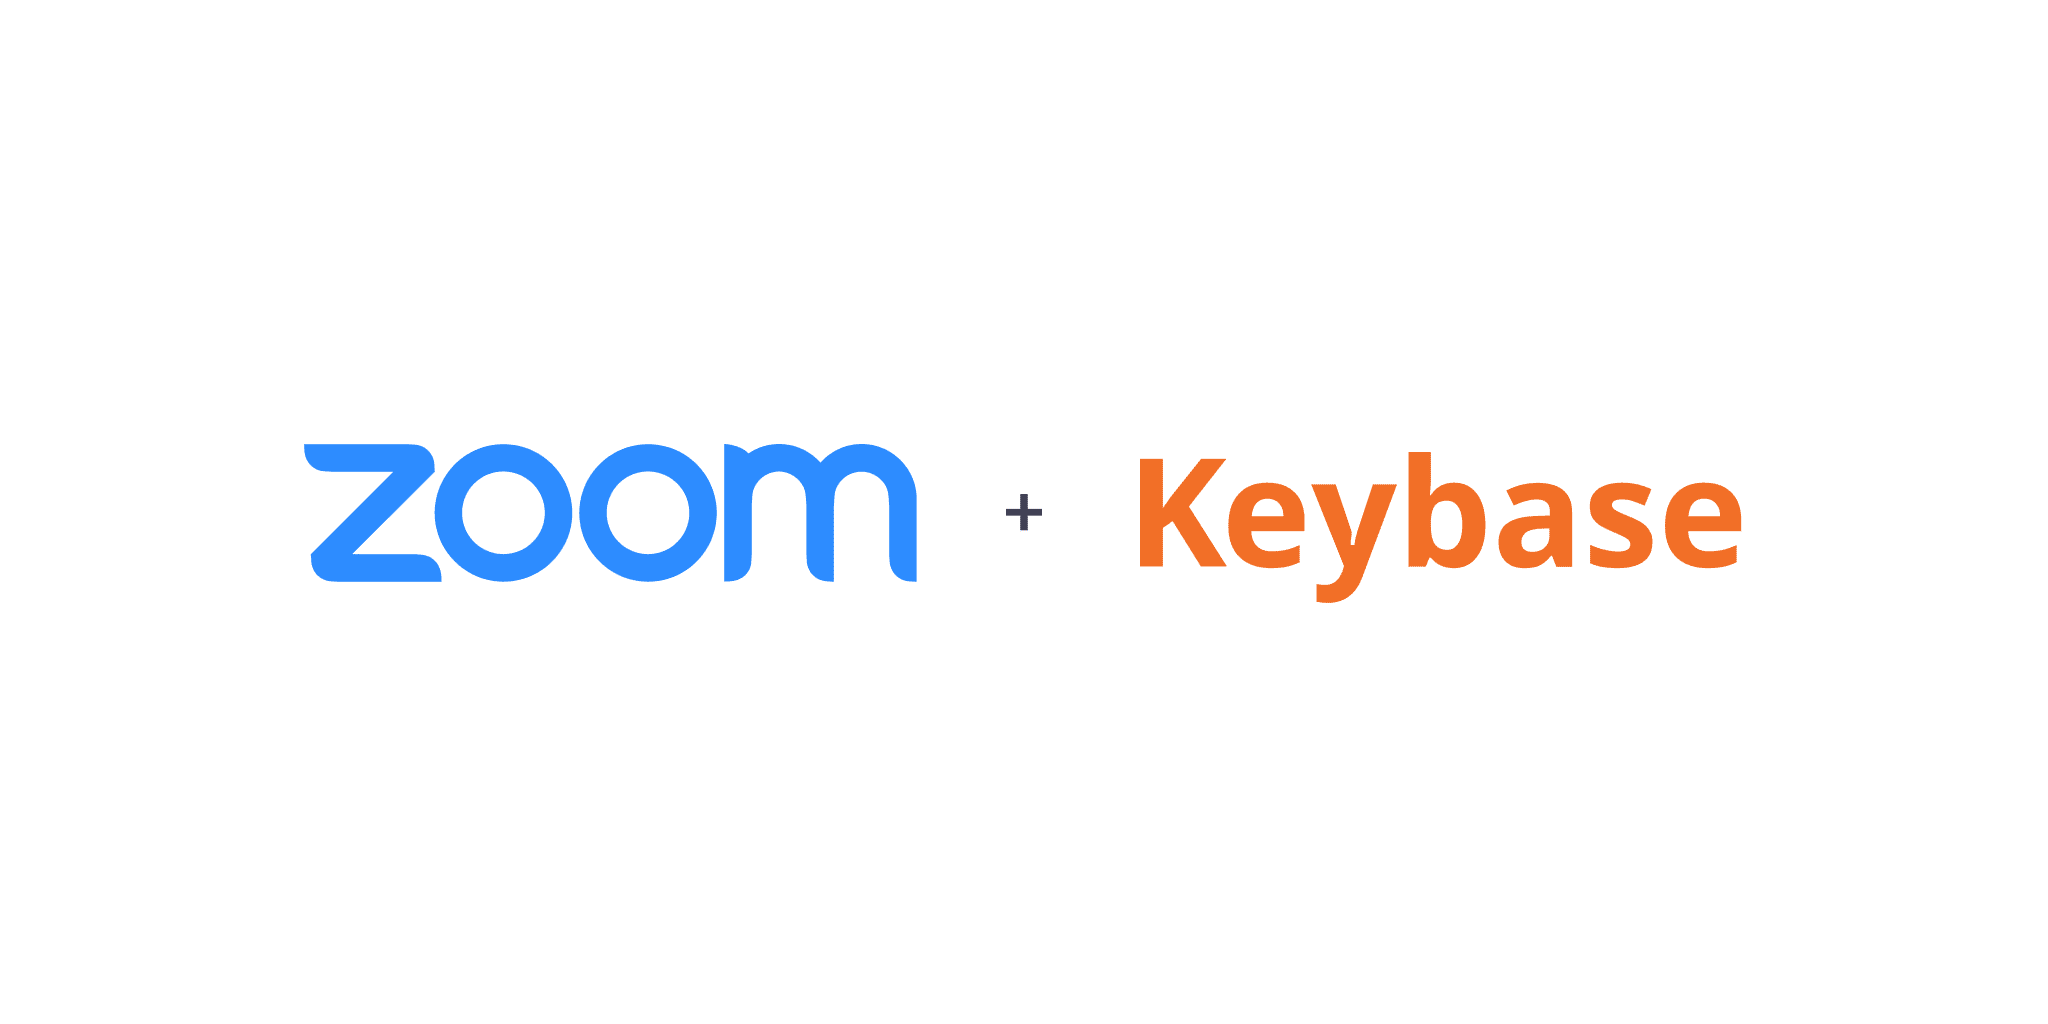 پلتفرم Keybase در Zoom ادغام شد